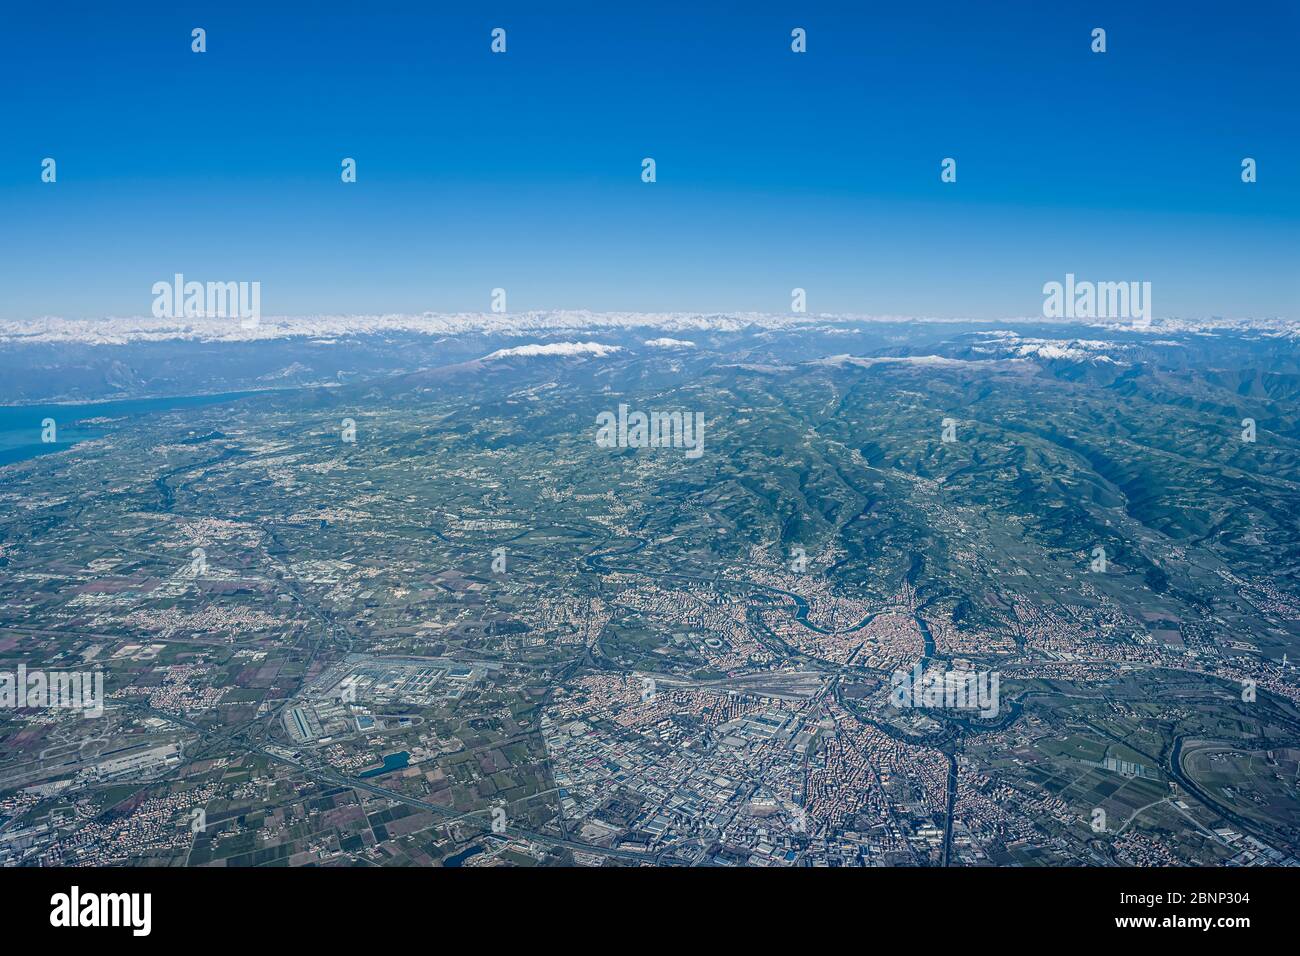 Verona, Venetien, Italien, Europa. Mit einem Heißluftballon die Alpen überqueren. Tiefer Blick auf die Stadt Verona Stockfoto